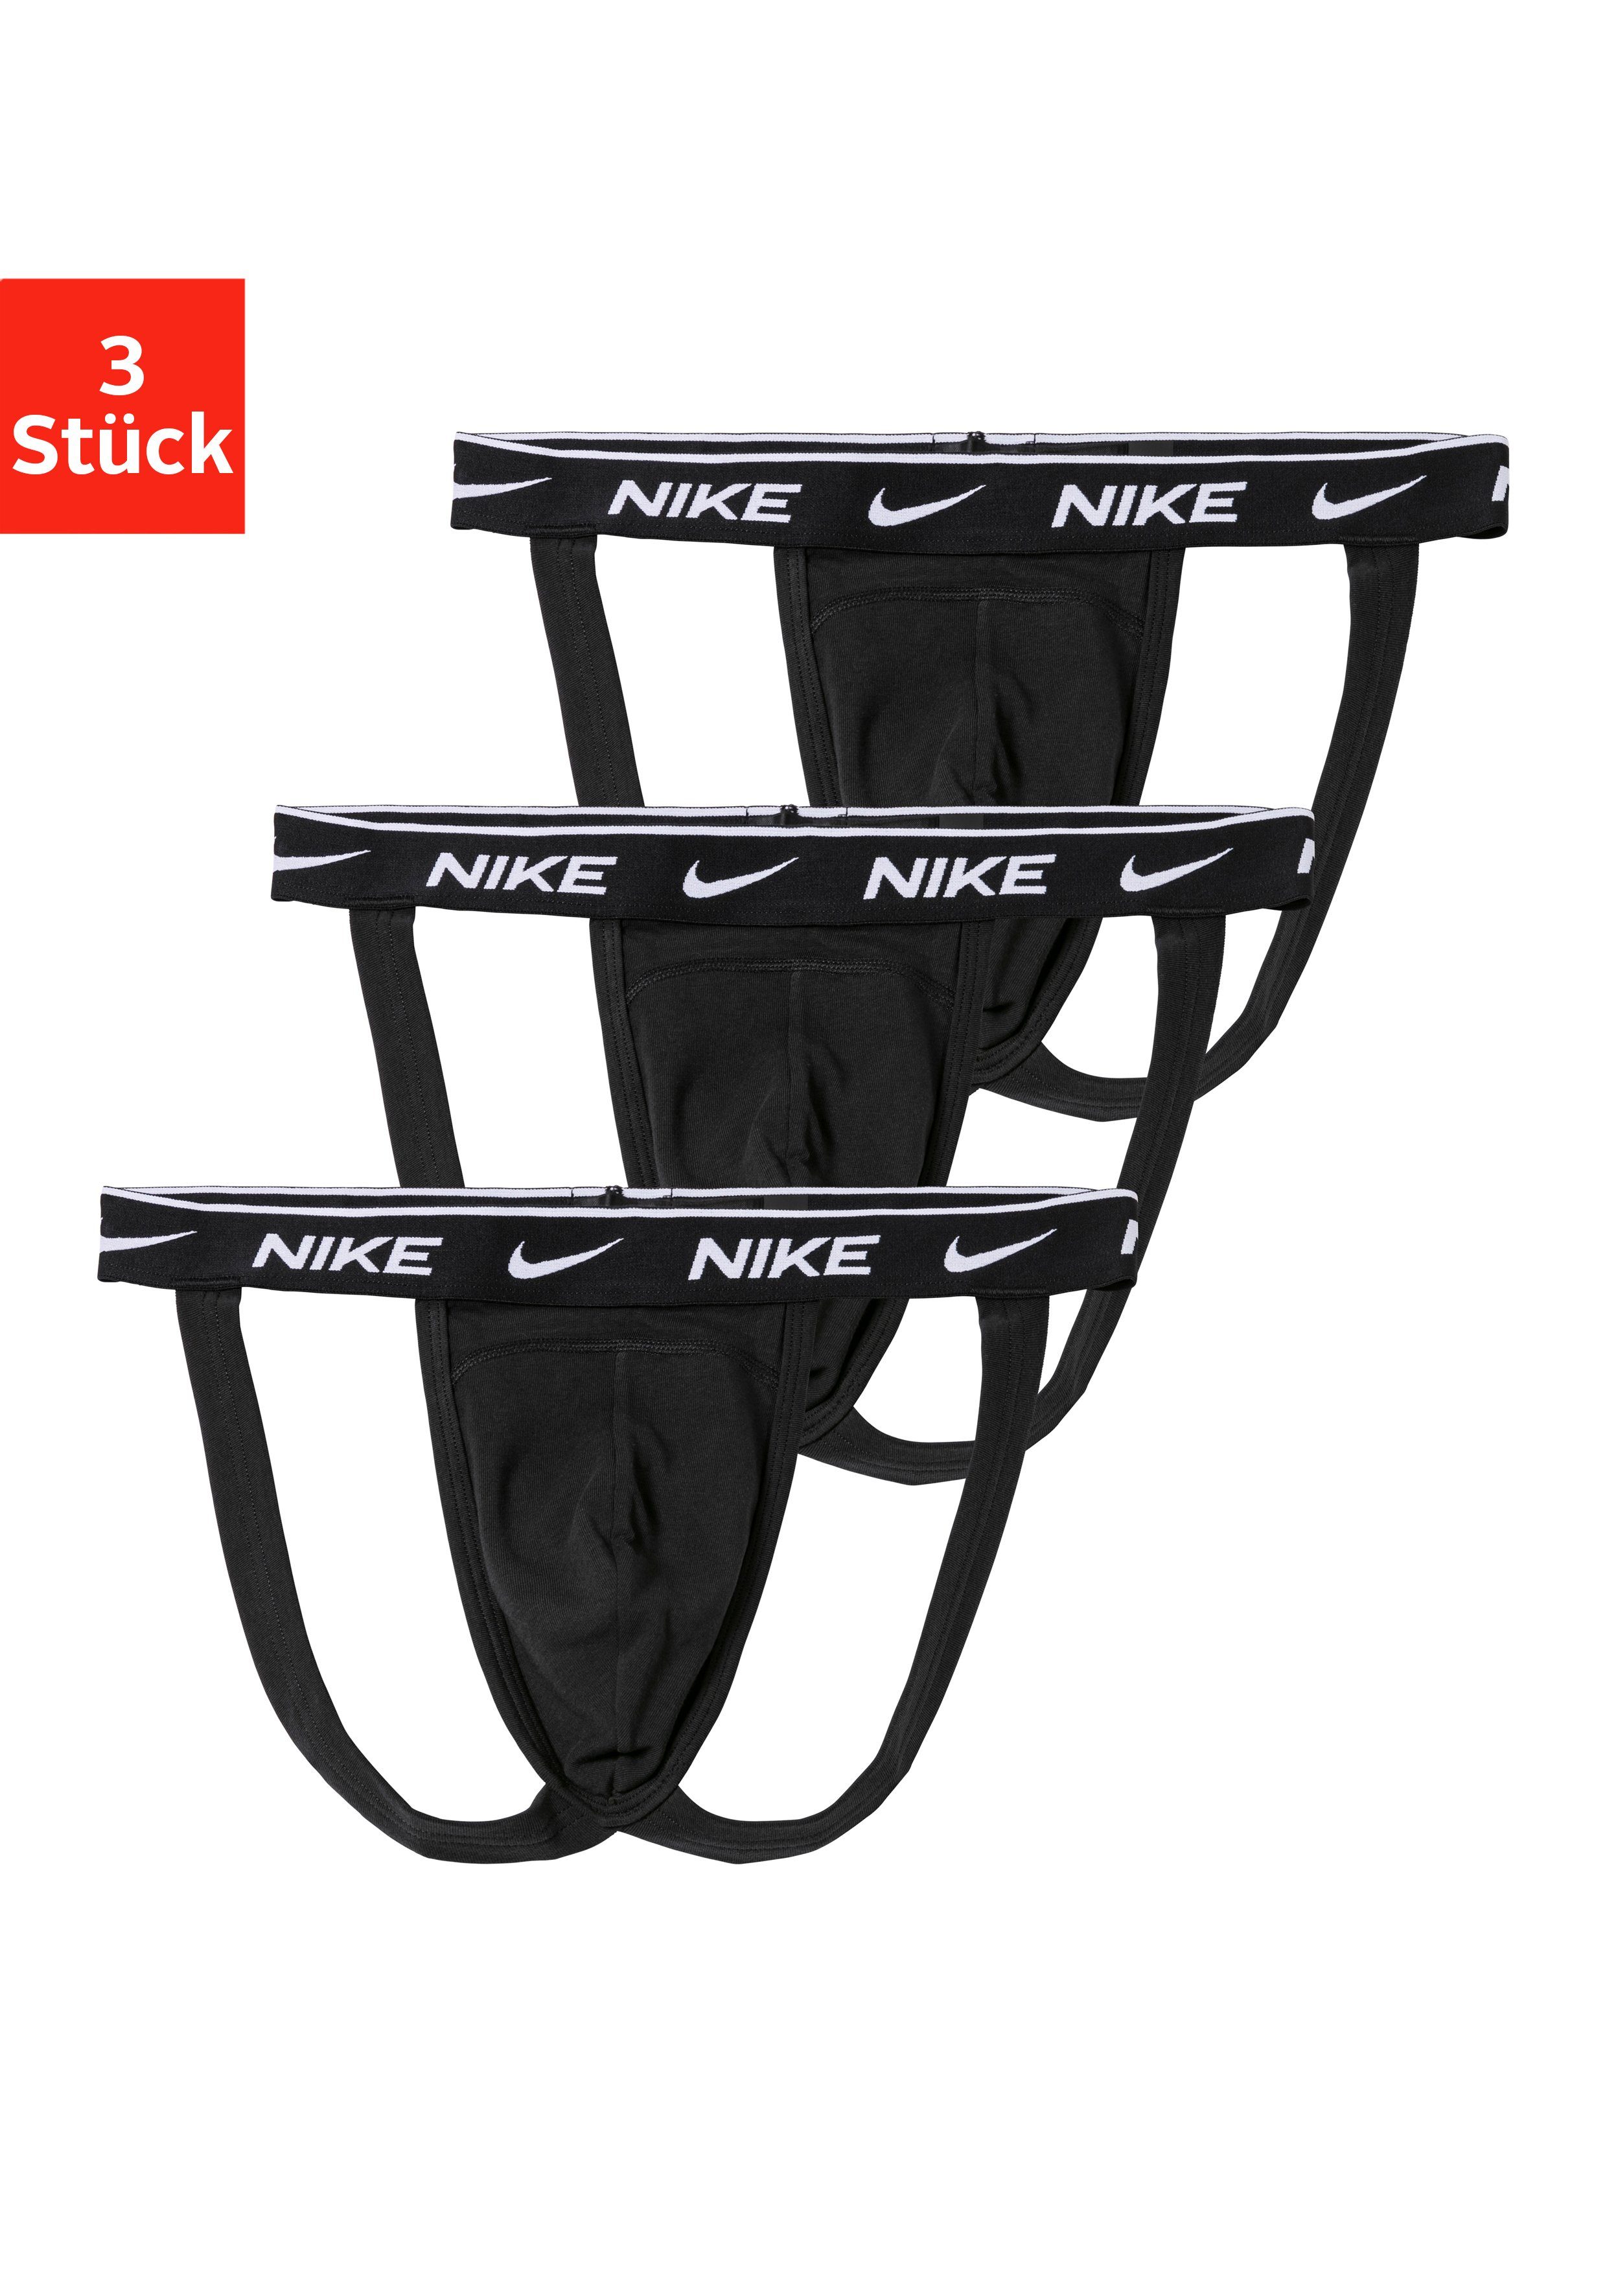 NIKE Underwear String (3-St) Jockstrap online kaufen | OTTO